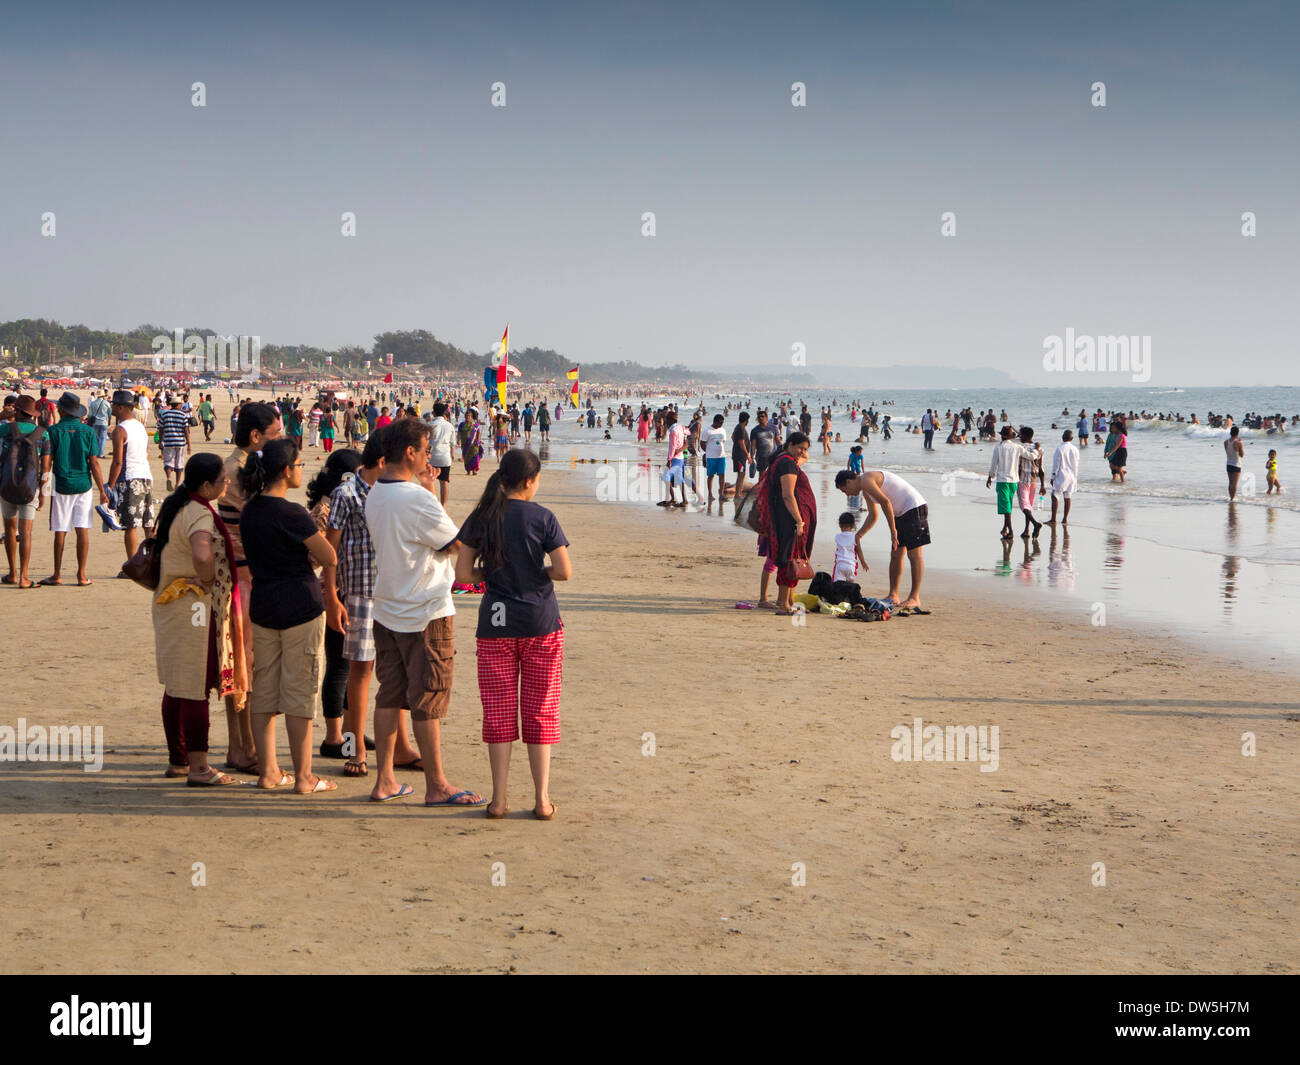 L'Inde, Goa, Baga, touristes indiens sur la plage Banque D'Images